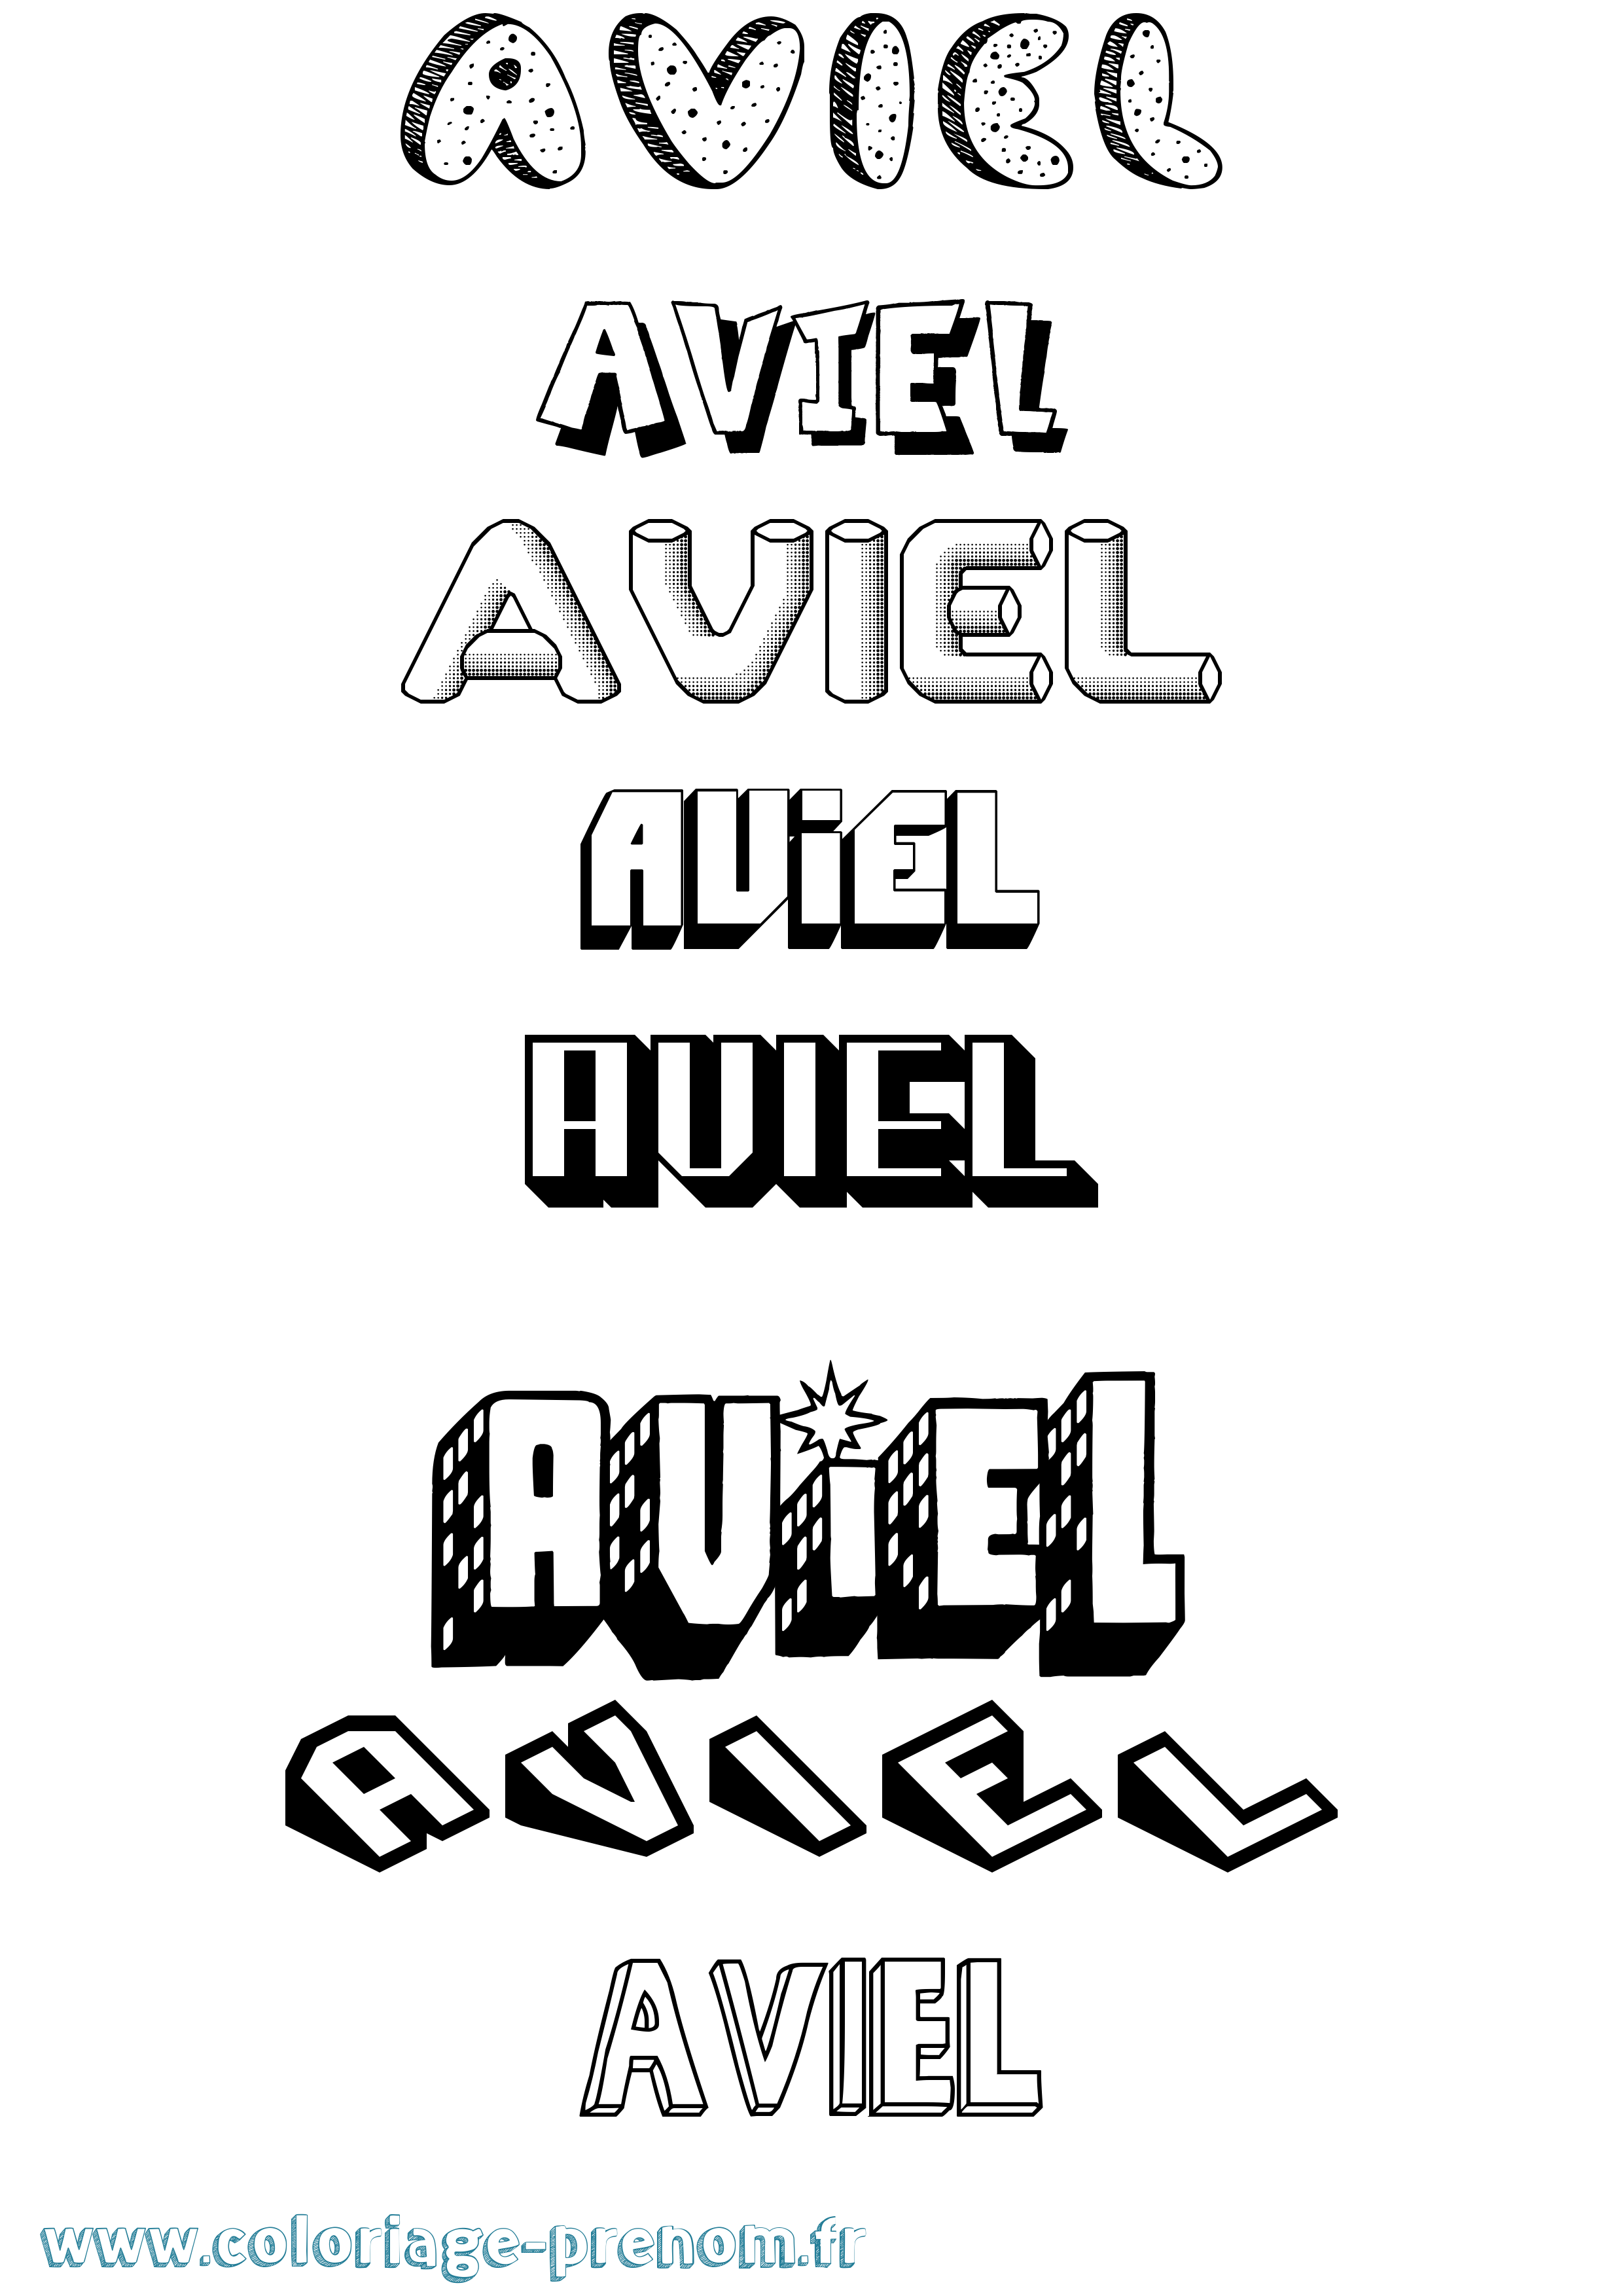 Coloriage prénom Aviel Effet 3D